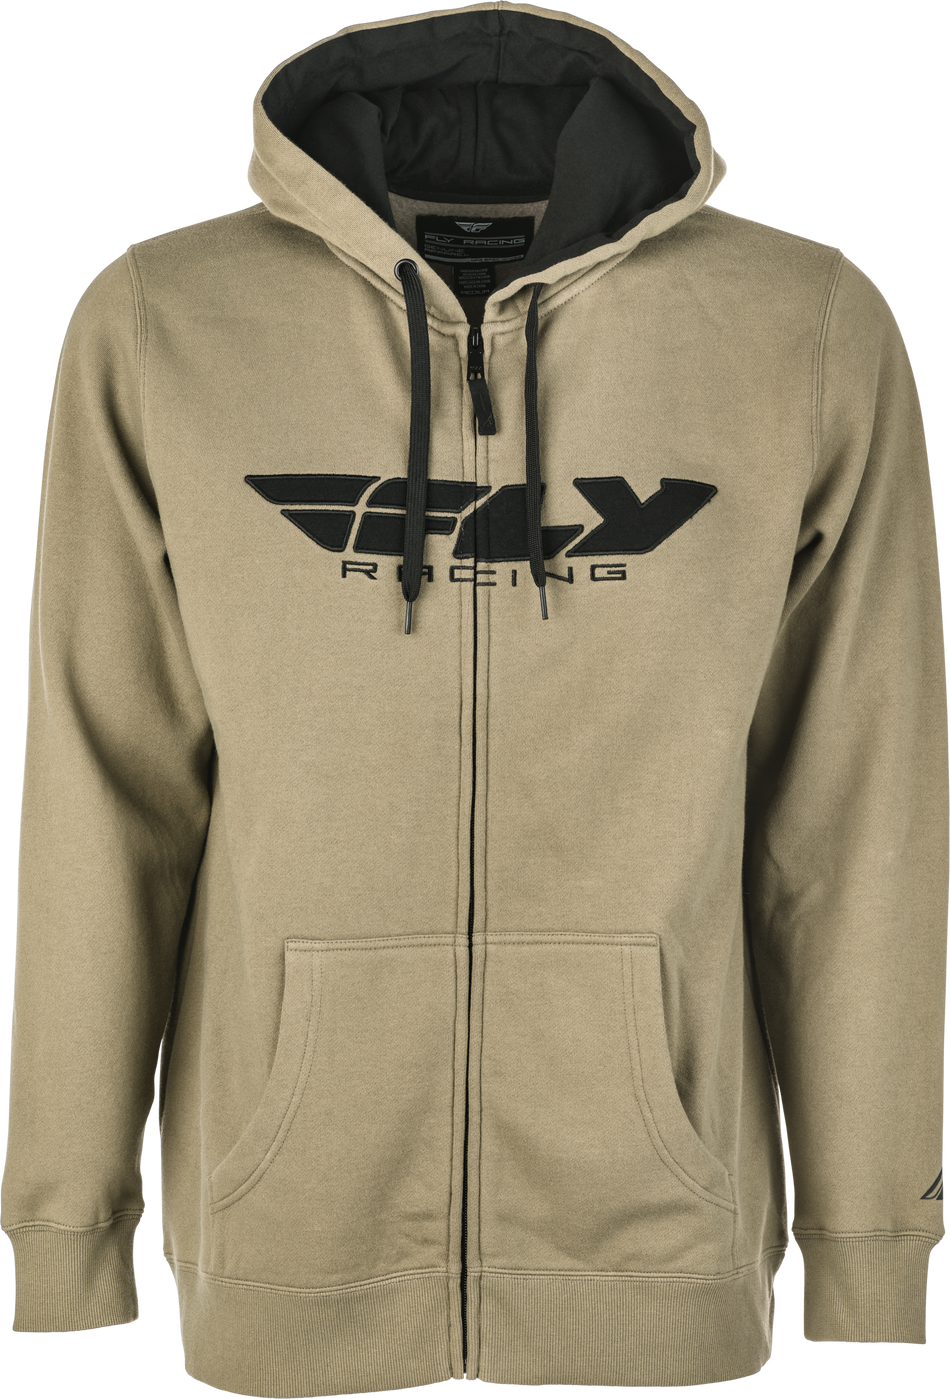 FLY RACING Fly Corporate Zip Up Hoodie Tan/Black Xl 354-0194X